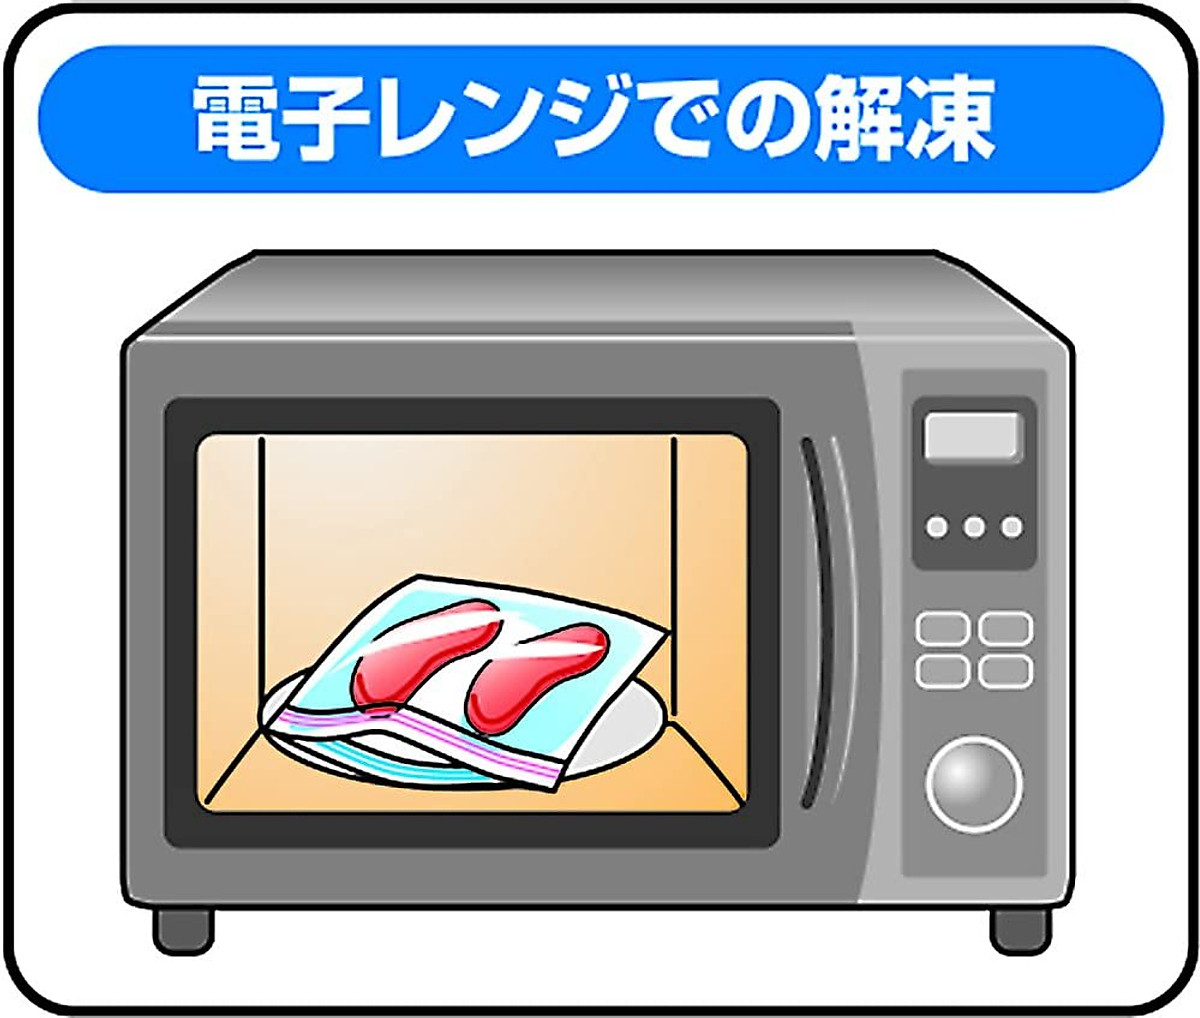 Hộp túi zipper Yamato Bussan W, giúp đựng thực phẩm, thịt, cá, rau củ, trái cây tươi...mà không gây mùi cho tủ lạnh - nội địa Nhật Bản